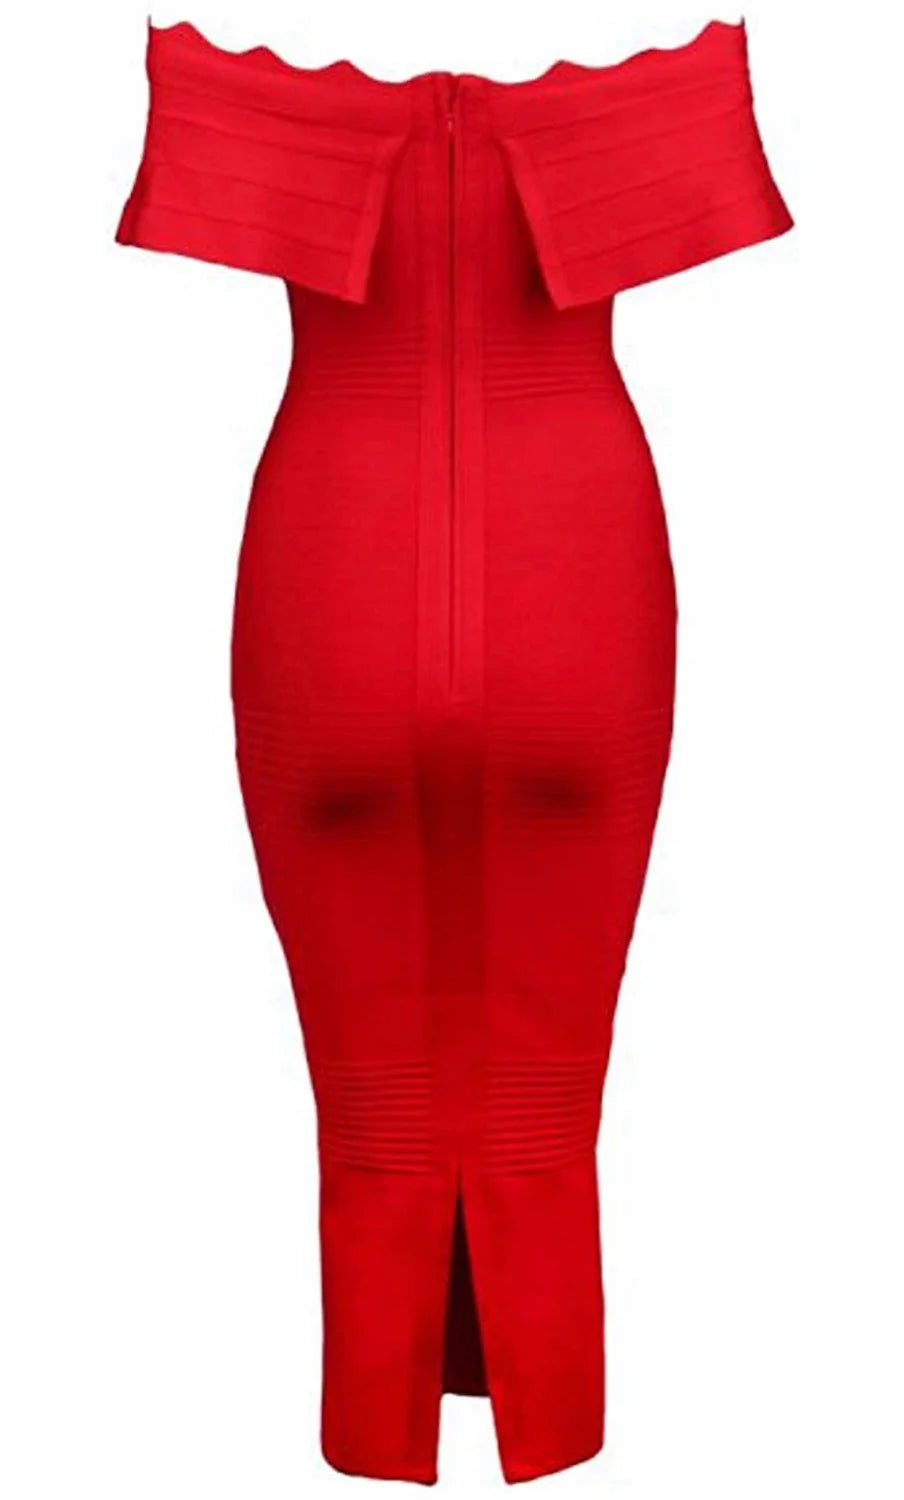 "Rivera" Off Shoulder Bandage Dress- Red - TOXIC ENVY BOUTIQUE 